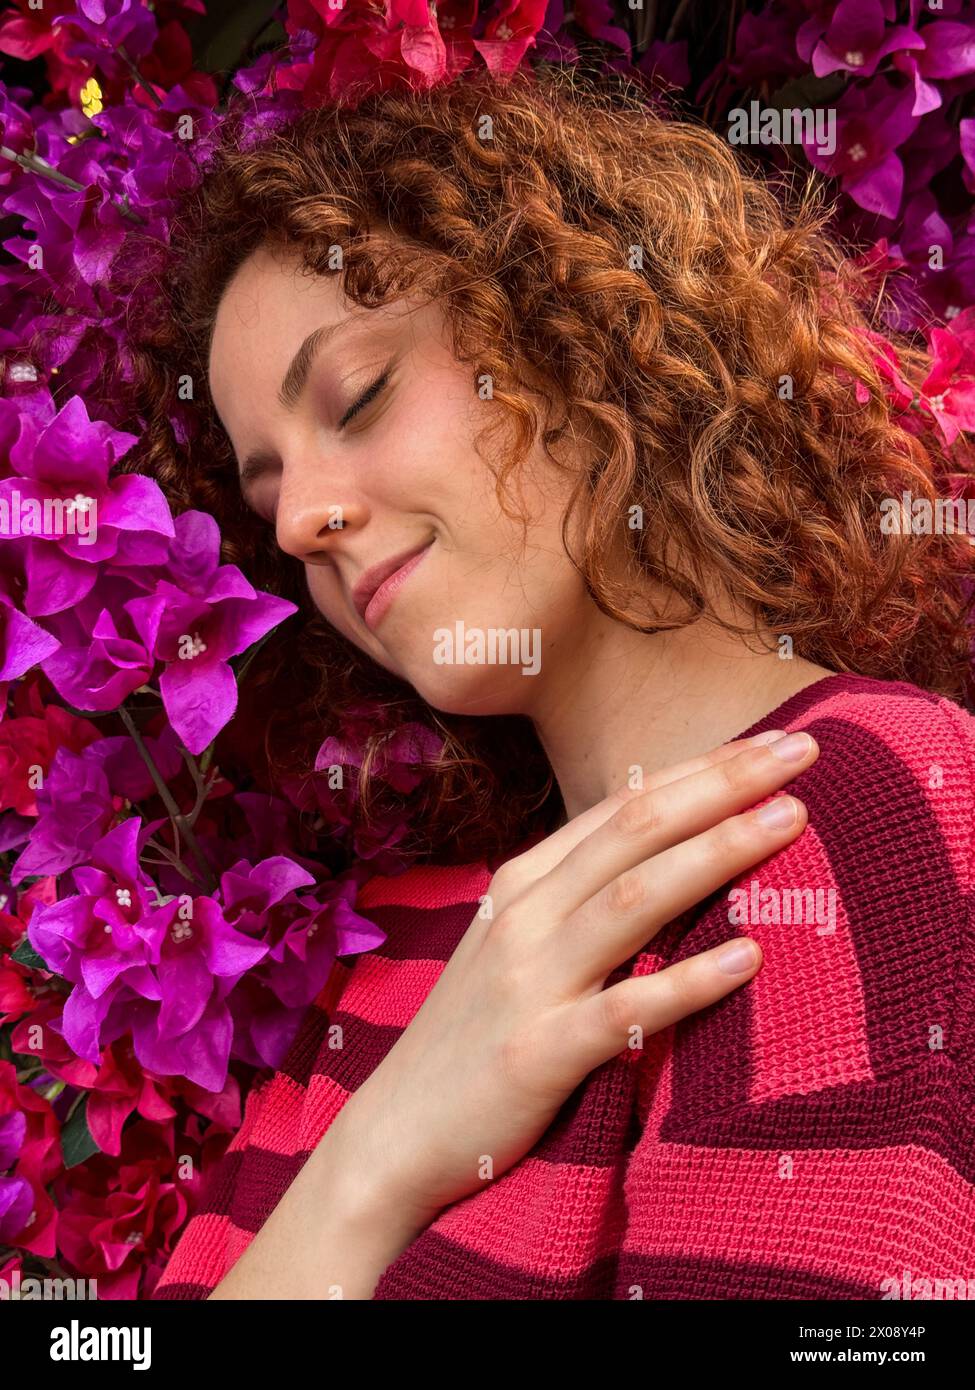 Una giovane donna rossa con capelli ricci gode un momento di pace circondato da vibranti fiori rosa Foto Stock